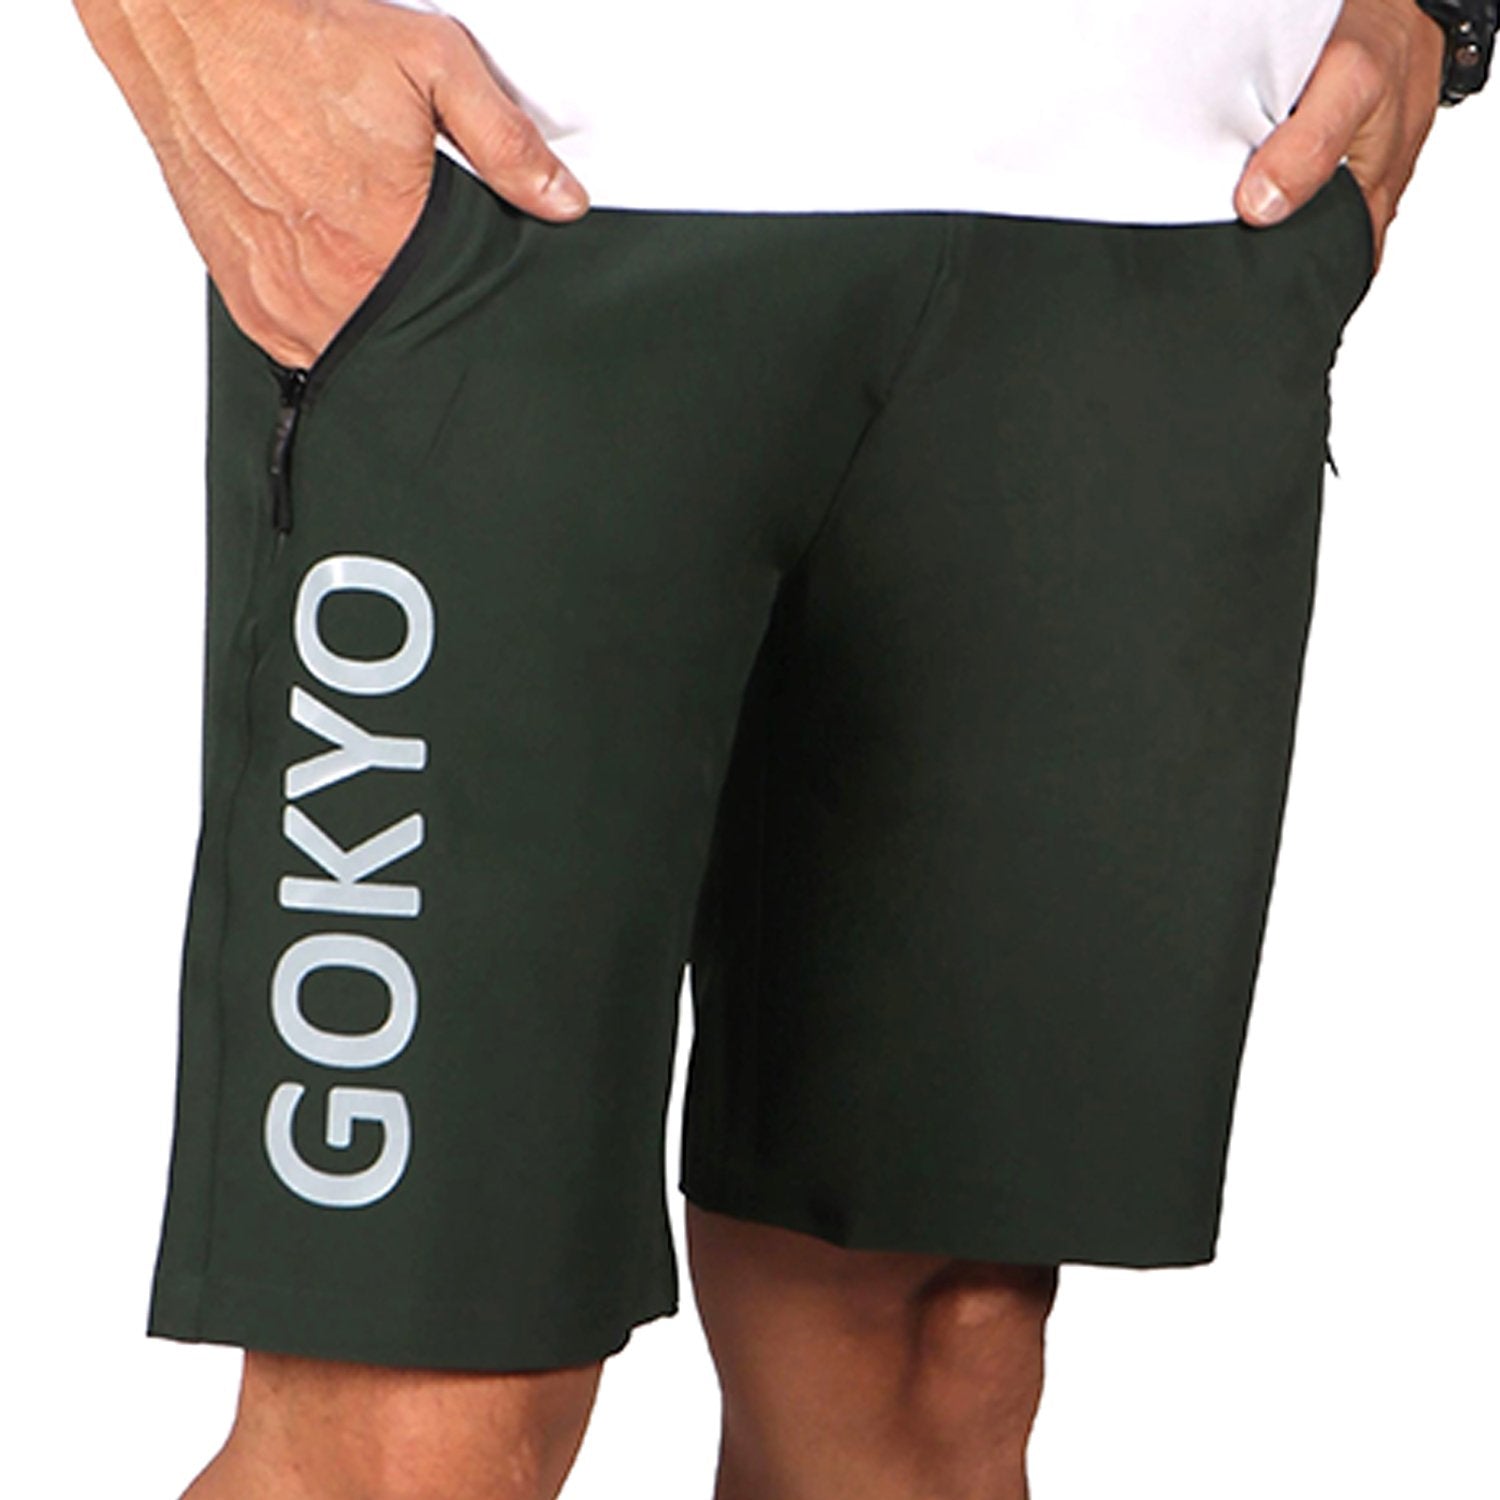 Buy Gokyo Kalimpong Trekking & Outdoor Shorts | Shorts at Gokyo Outdoor Clothing & Gear